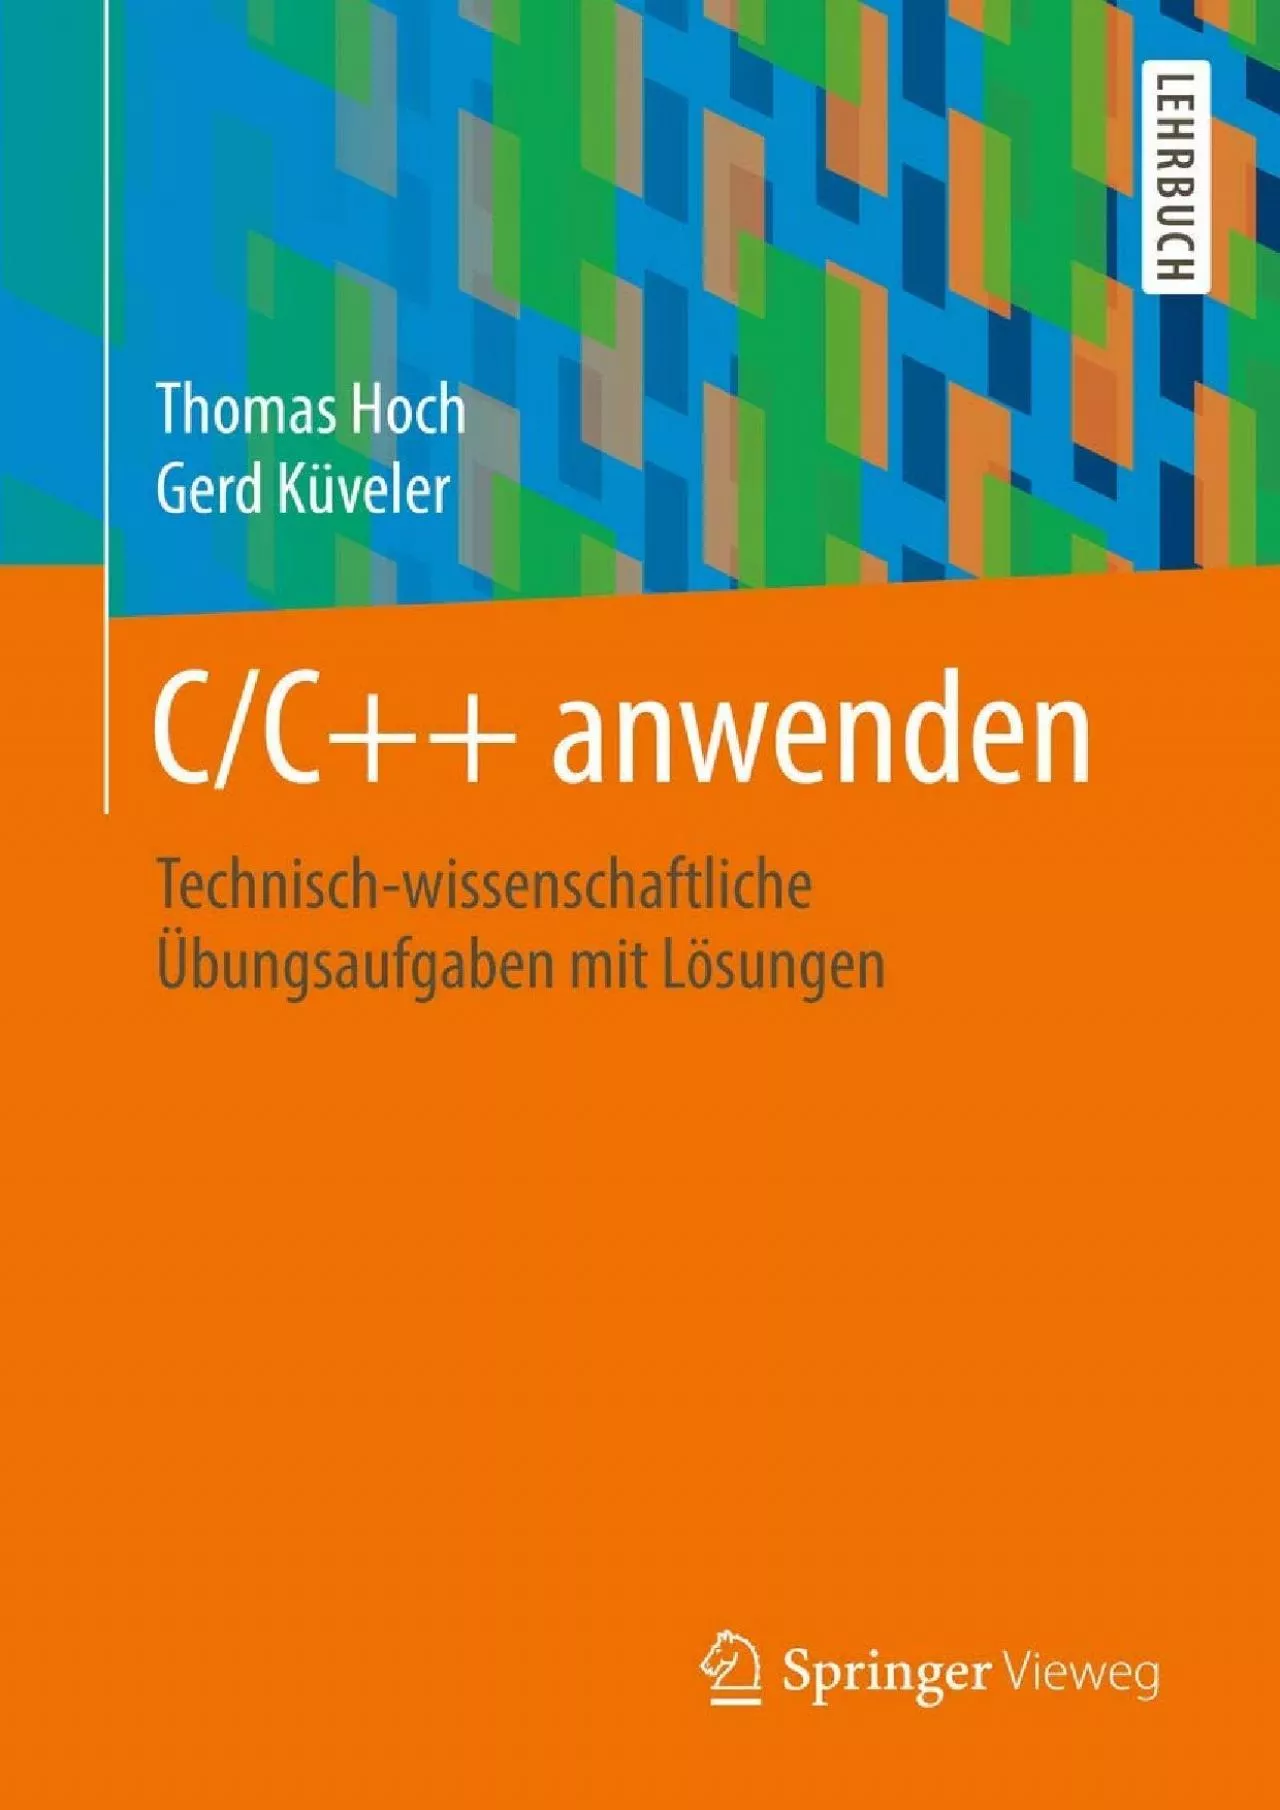 [DOWLOAD]-CC++ anwenden: Technisch-wissenschaftliche Übungsaufgaben mit Lösungen (German